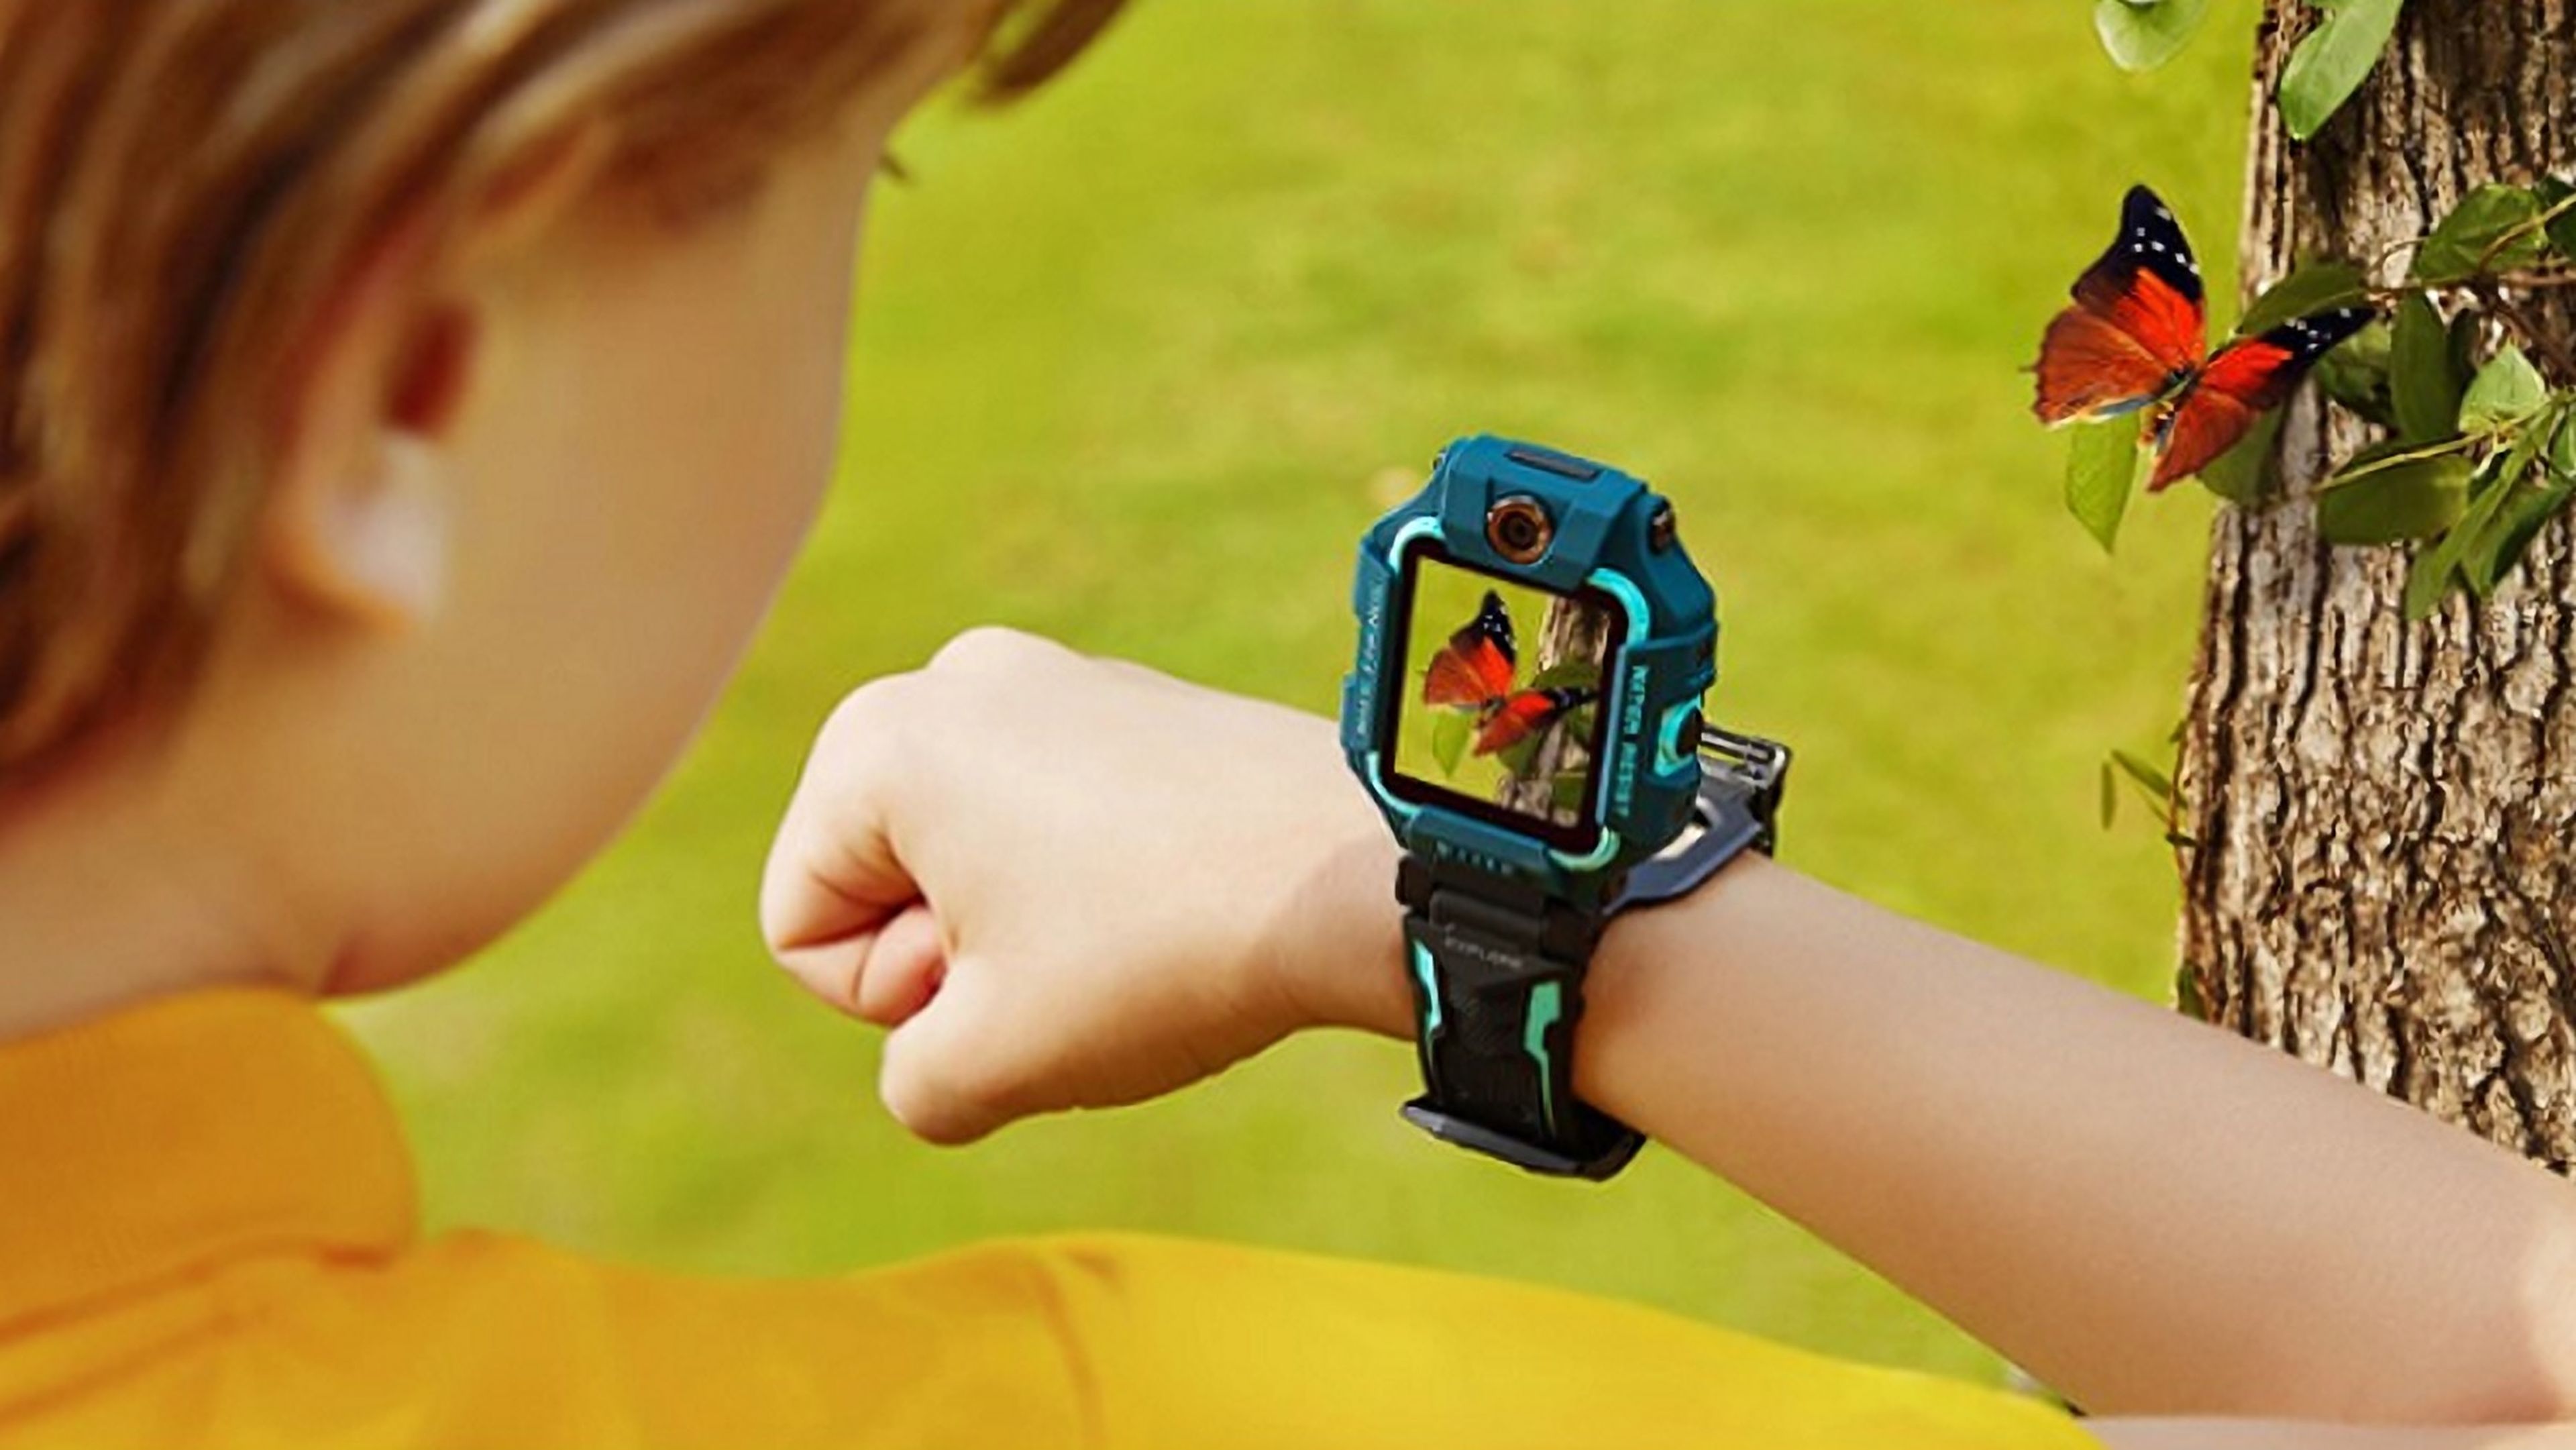 precisamente Diez años Vegetación imoo Z6, smartwatch para niños con llamadas por 185€ | Computer Hoy